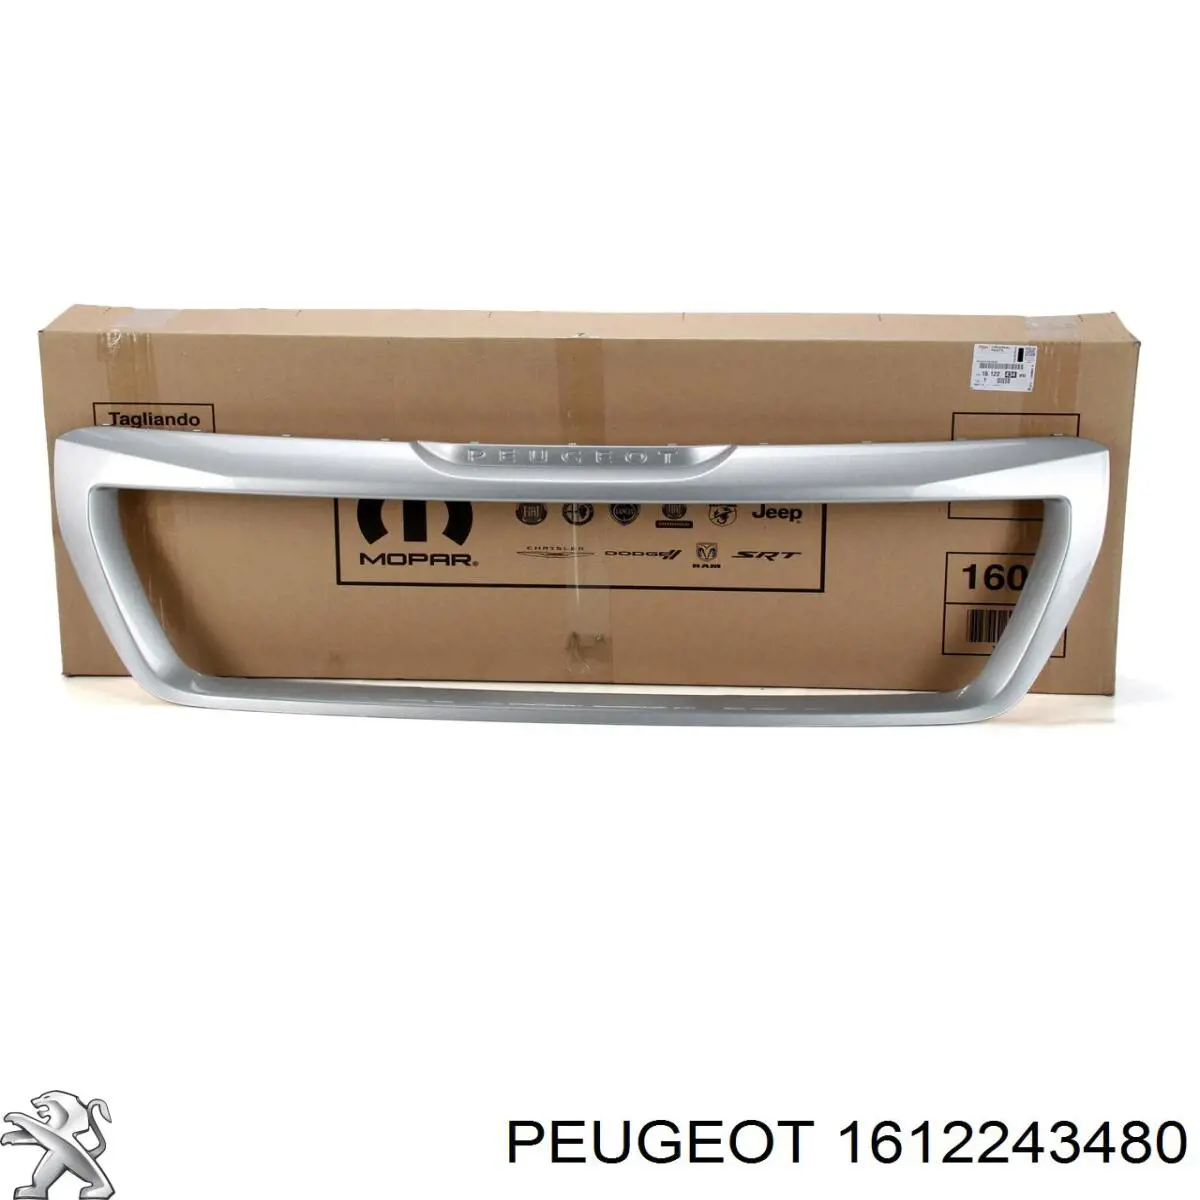 1612243480 Peugeot/Citroen moldura de rejilla de radiador